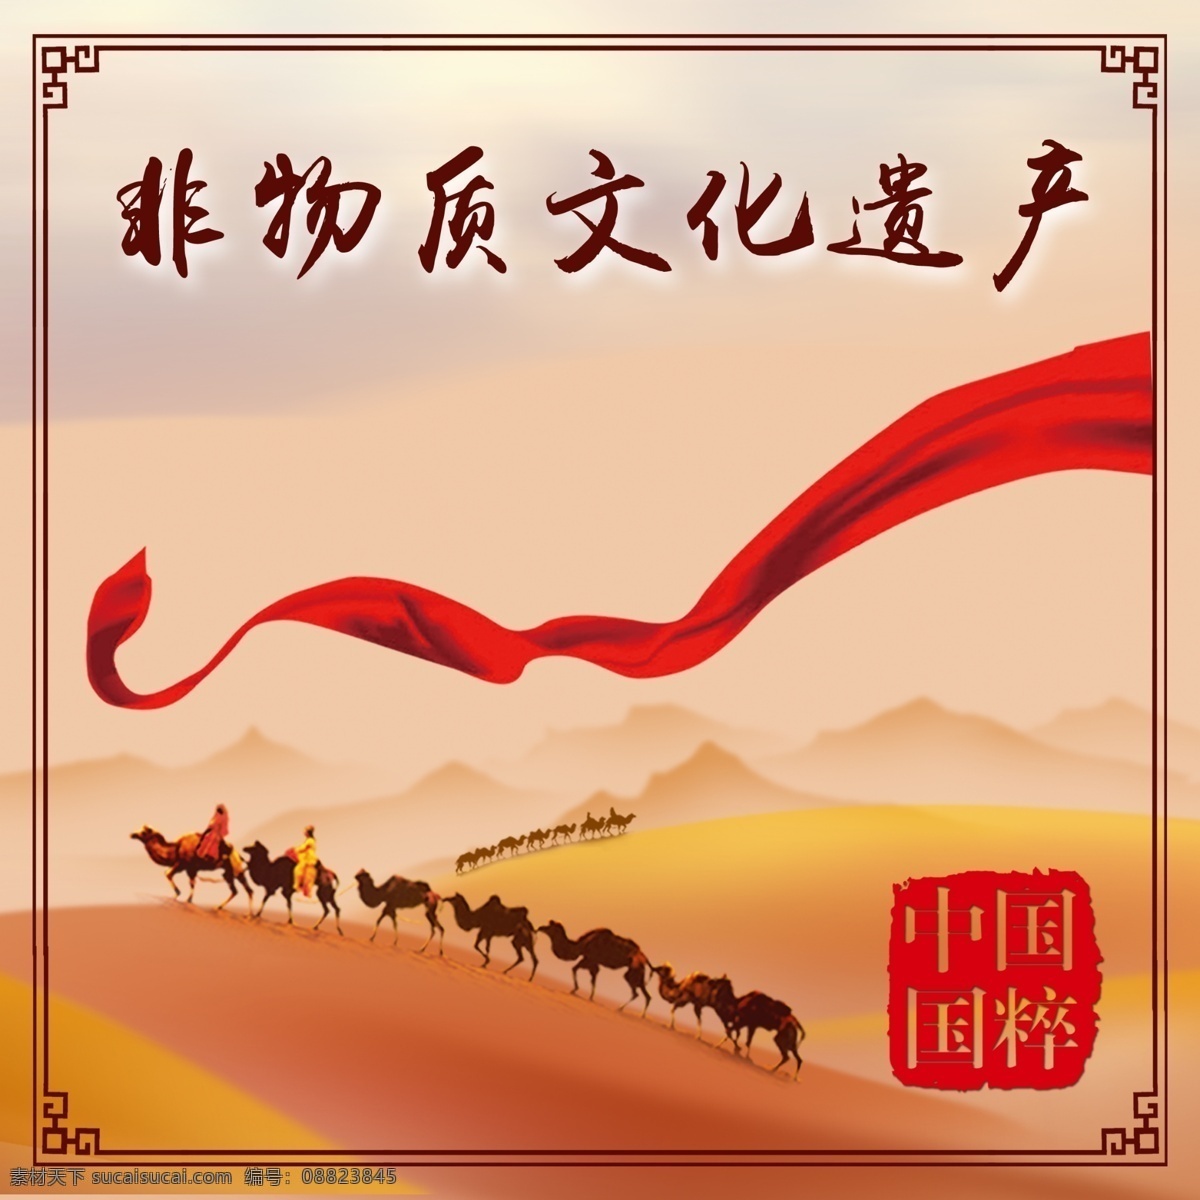 阿拉善 非物质文化 遗产 印章 骆驼 红色丝带 边框 沙漠 黄色